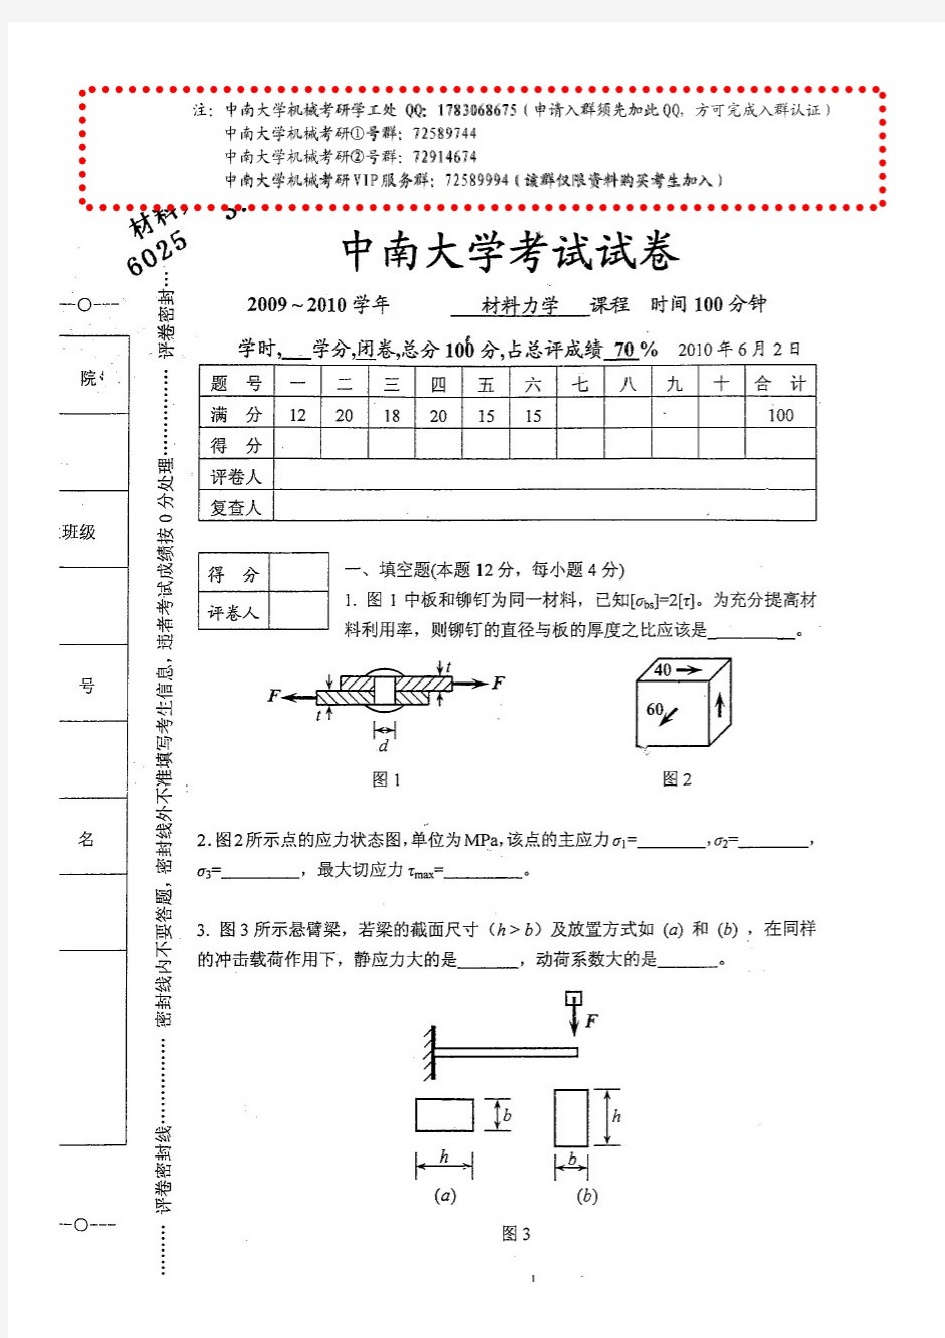 中南大学机电学院考研材料力学试卷及答案(共38页)